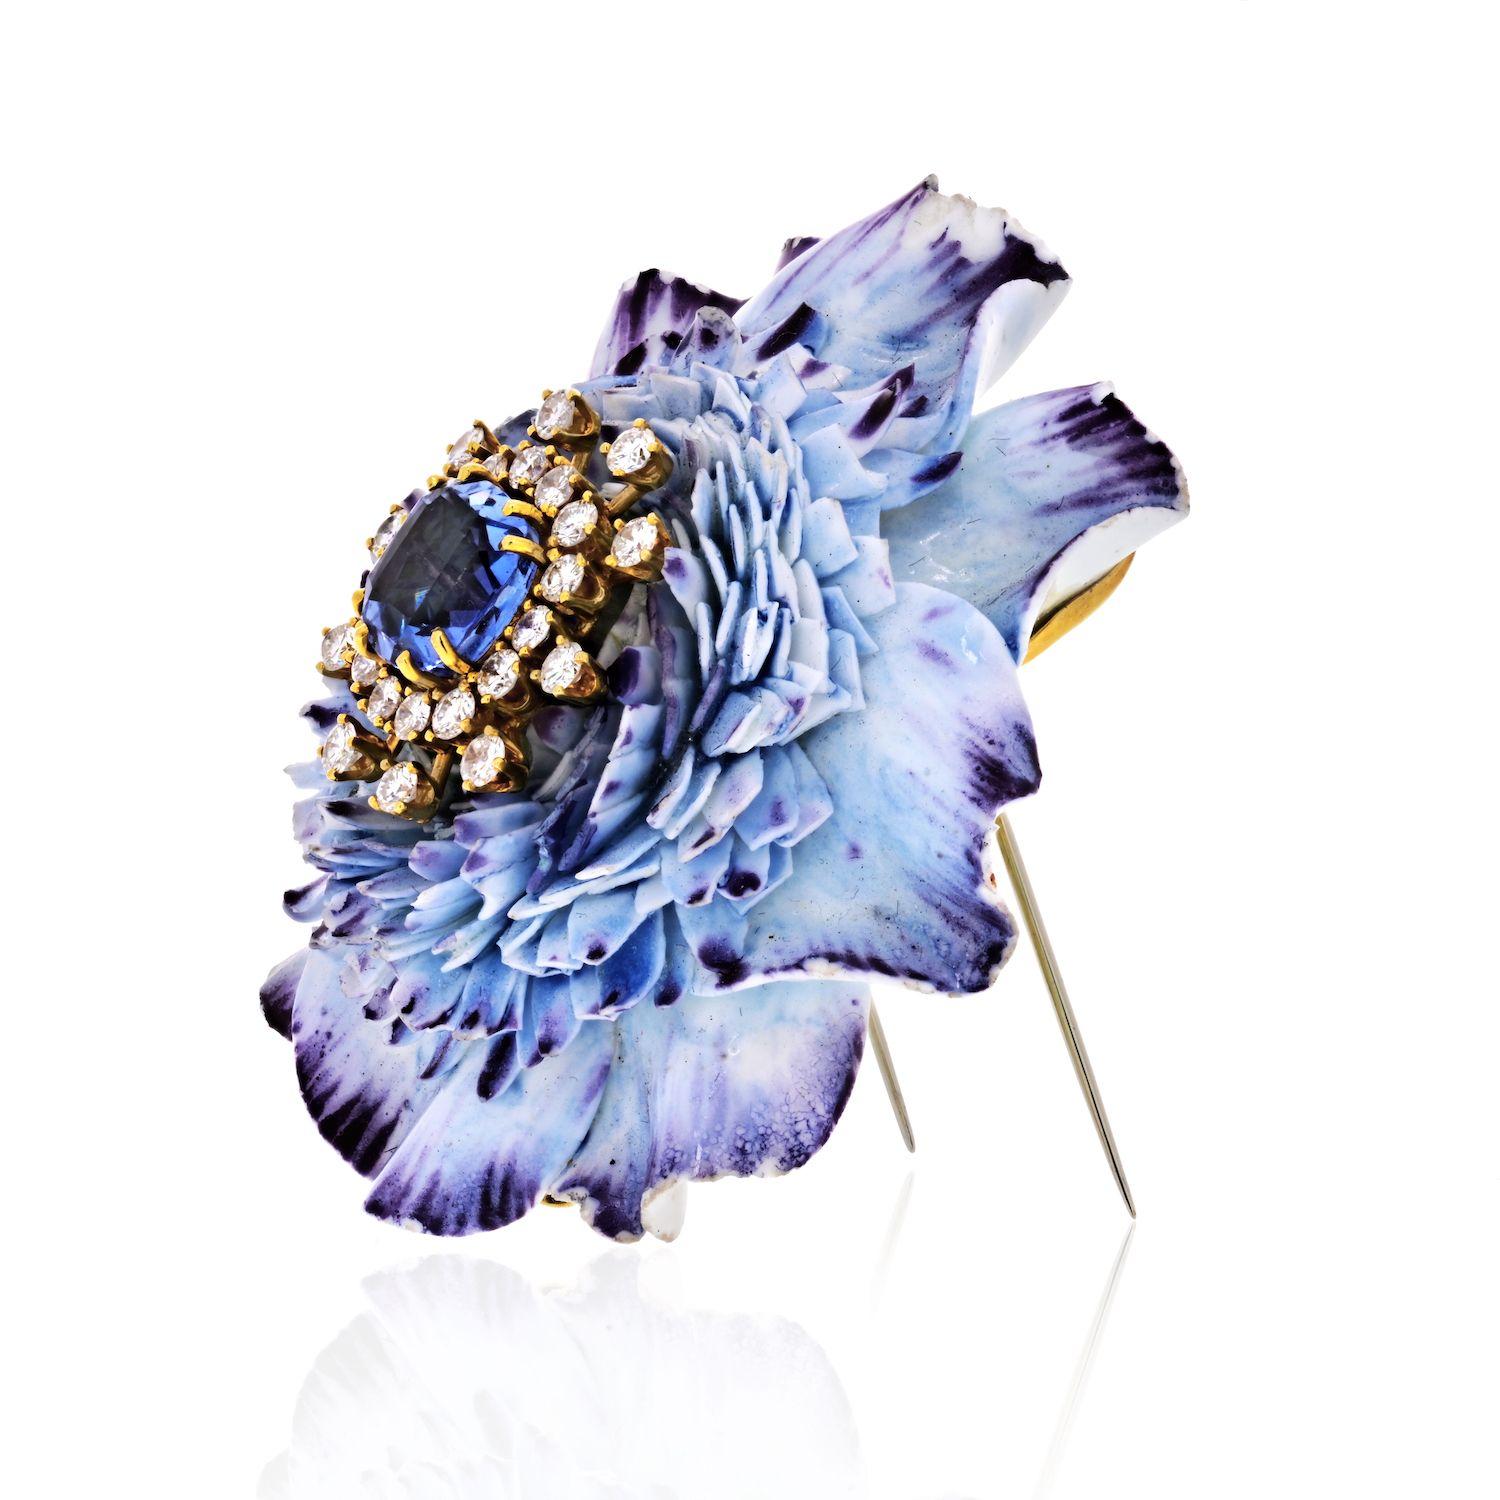 Une fleur en céramique givrée superbement sculptée avec un saphir taillé en coussin au centre.  La tête de la fleur est ornée de diamants et offre un magnifique effet de scintillement au saphir central. 
Cette broche a une teinte bleue douce